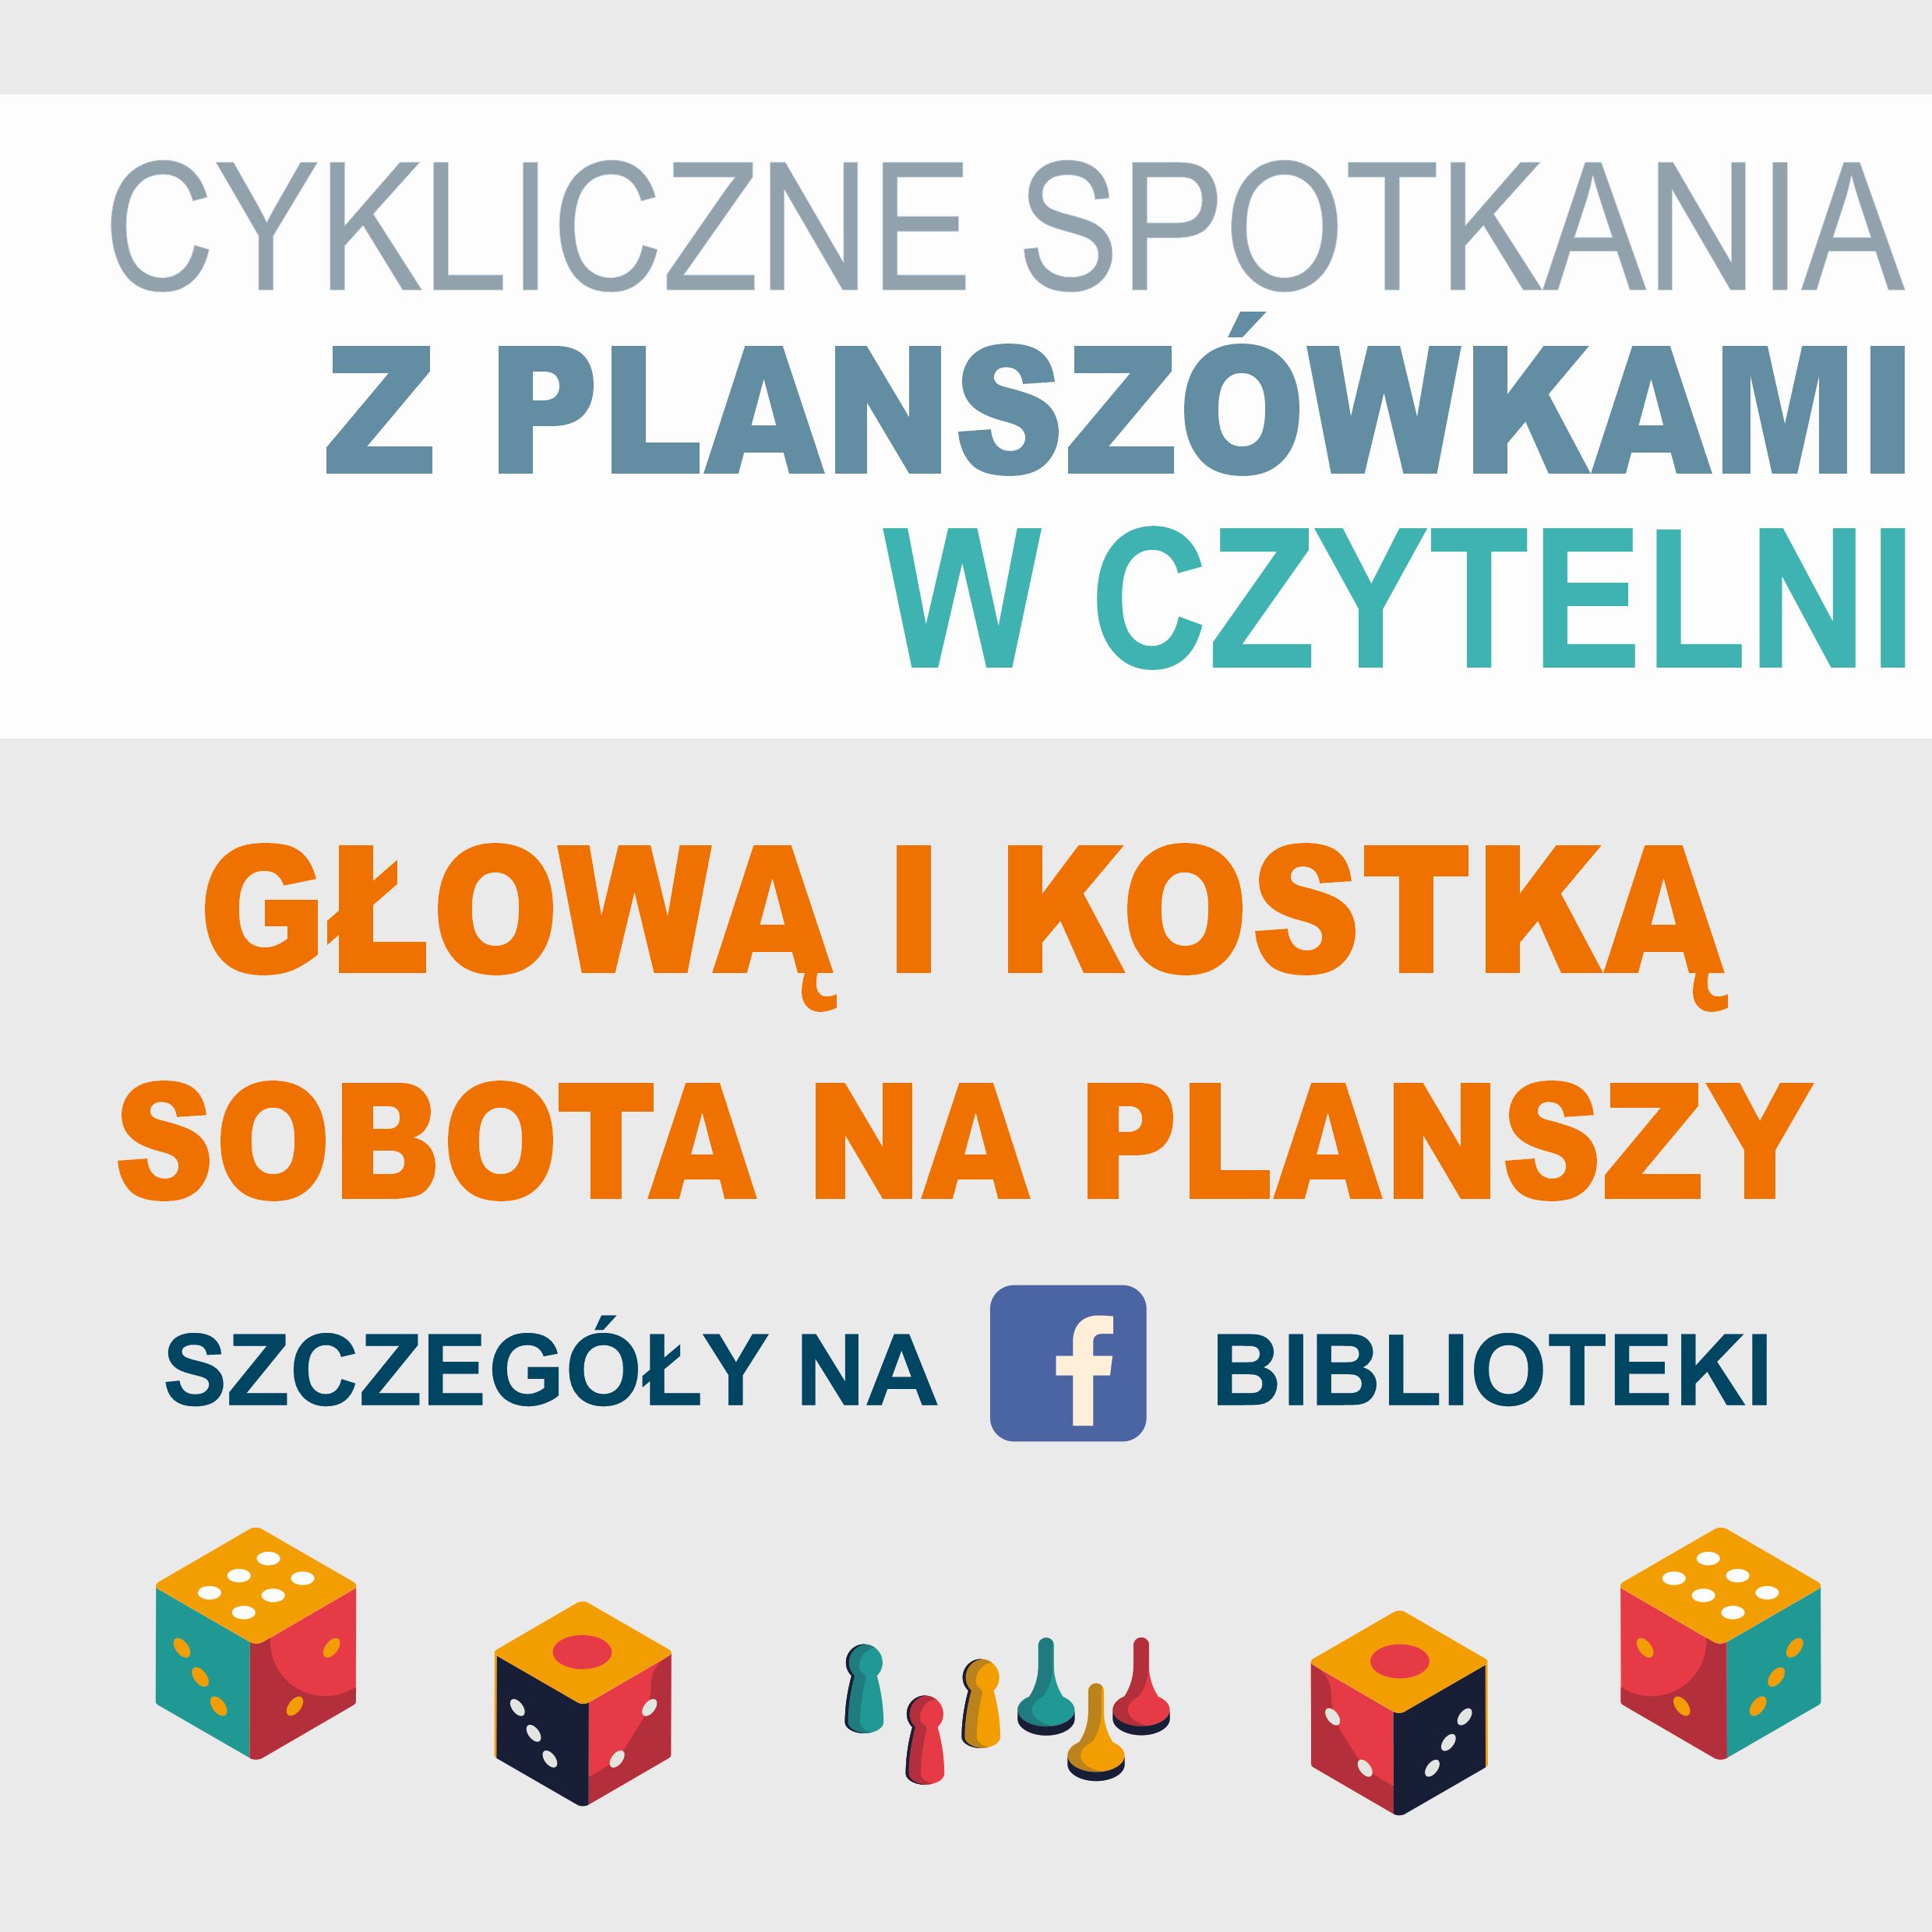 Cykliczne Spotkania Z Planszówkami W Czytelni: Głową I Kostką Oraz Soboty Na Planszy - Szczegóły Na Facebooku Biblioteki